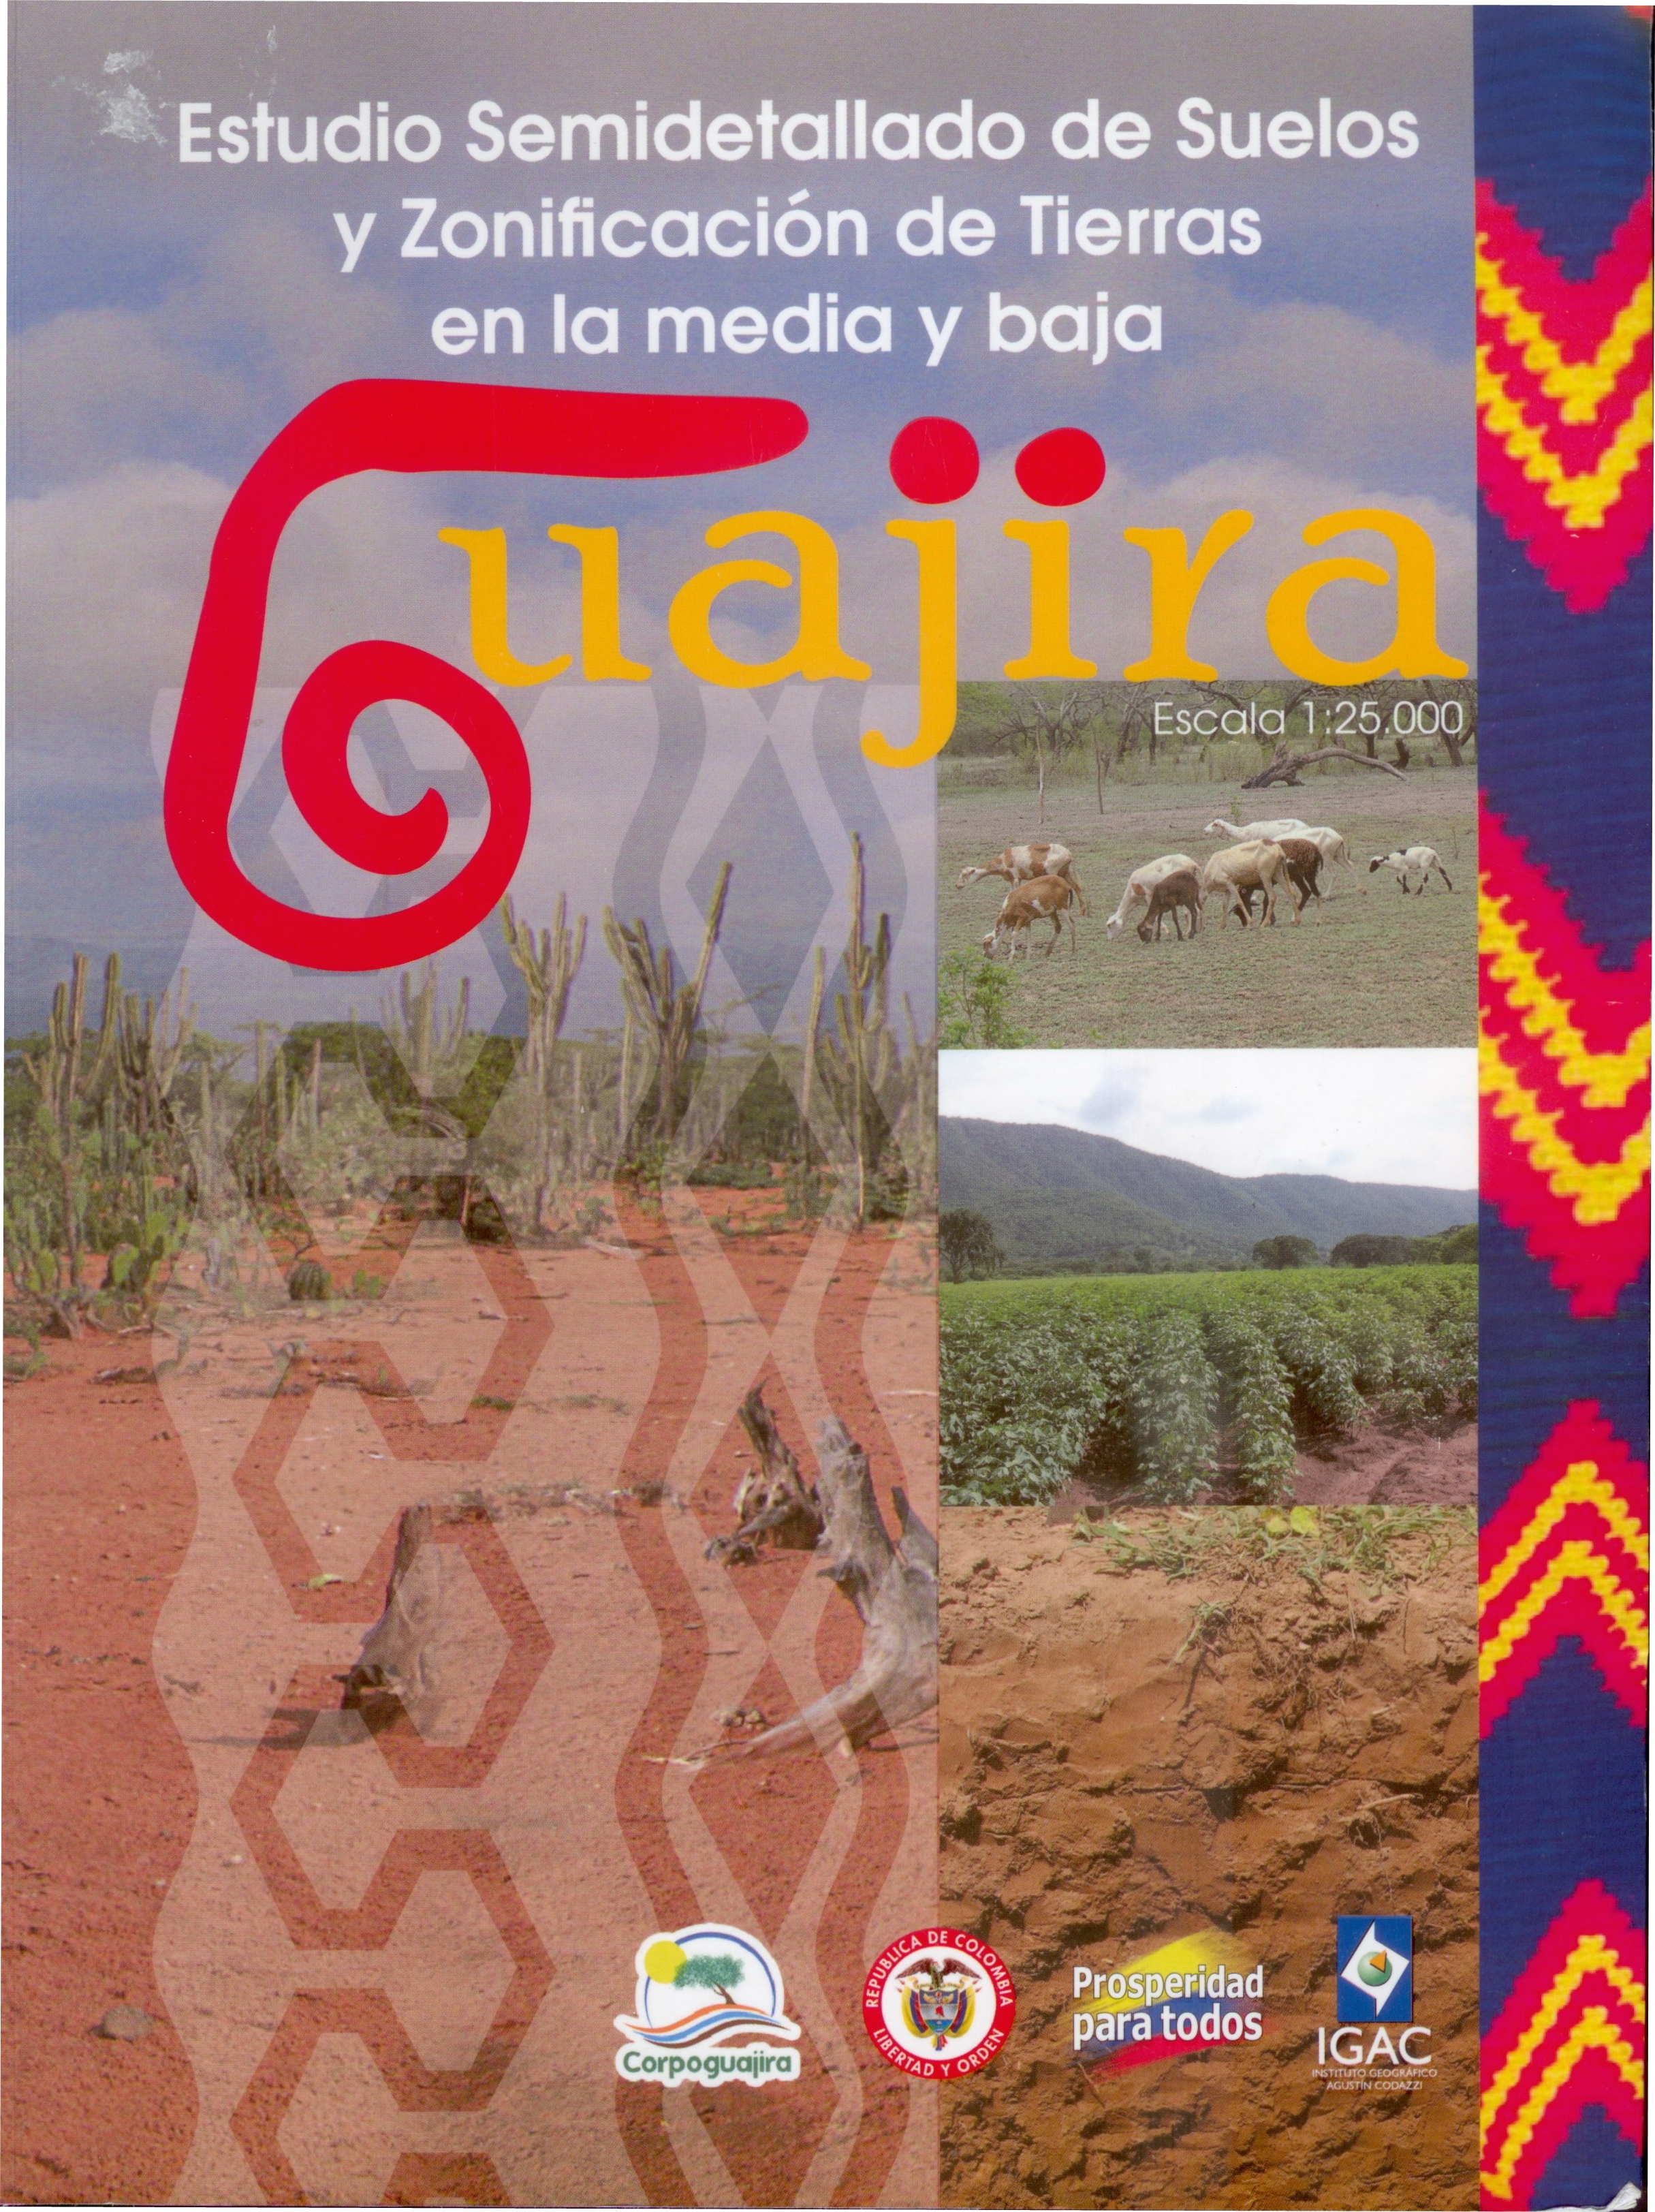 http://www.cenicana.org/investigacion/seica/imagenes_libros/2013/caratula_guajira.jpg